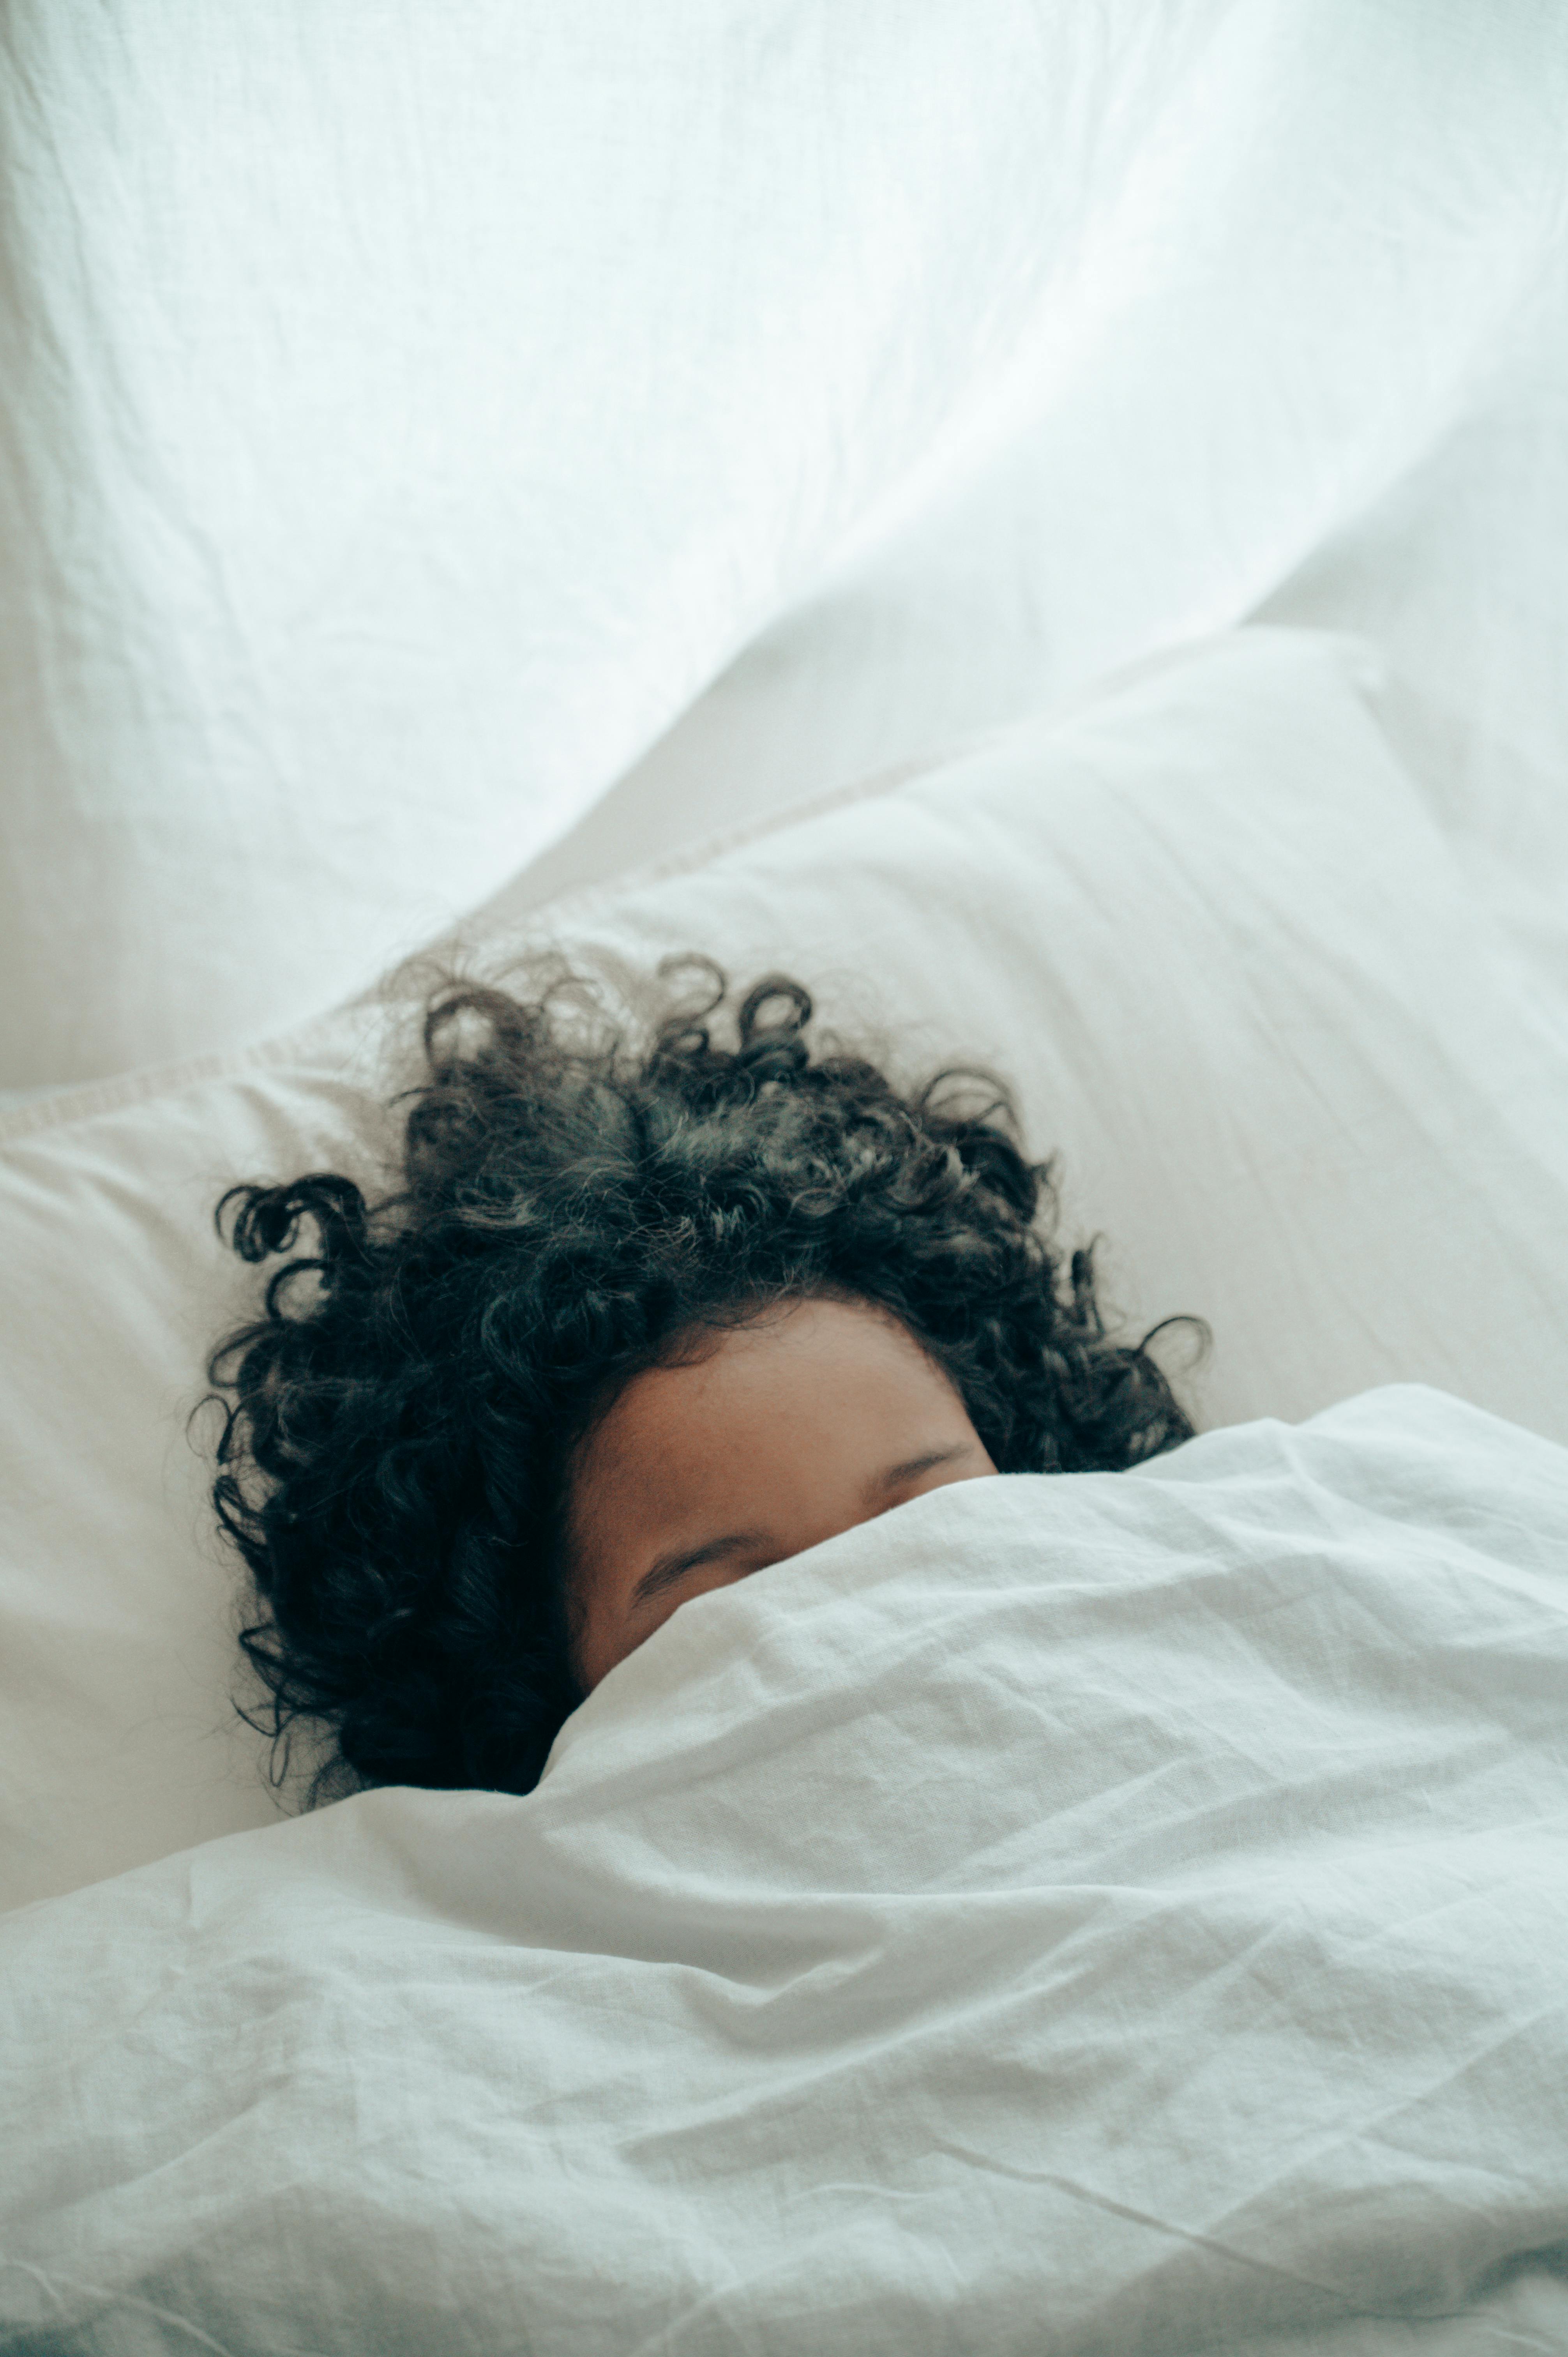 Un niño en la cama agachándose bajo el edredón | Fuente: Pexels